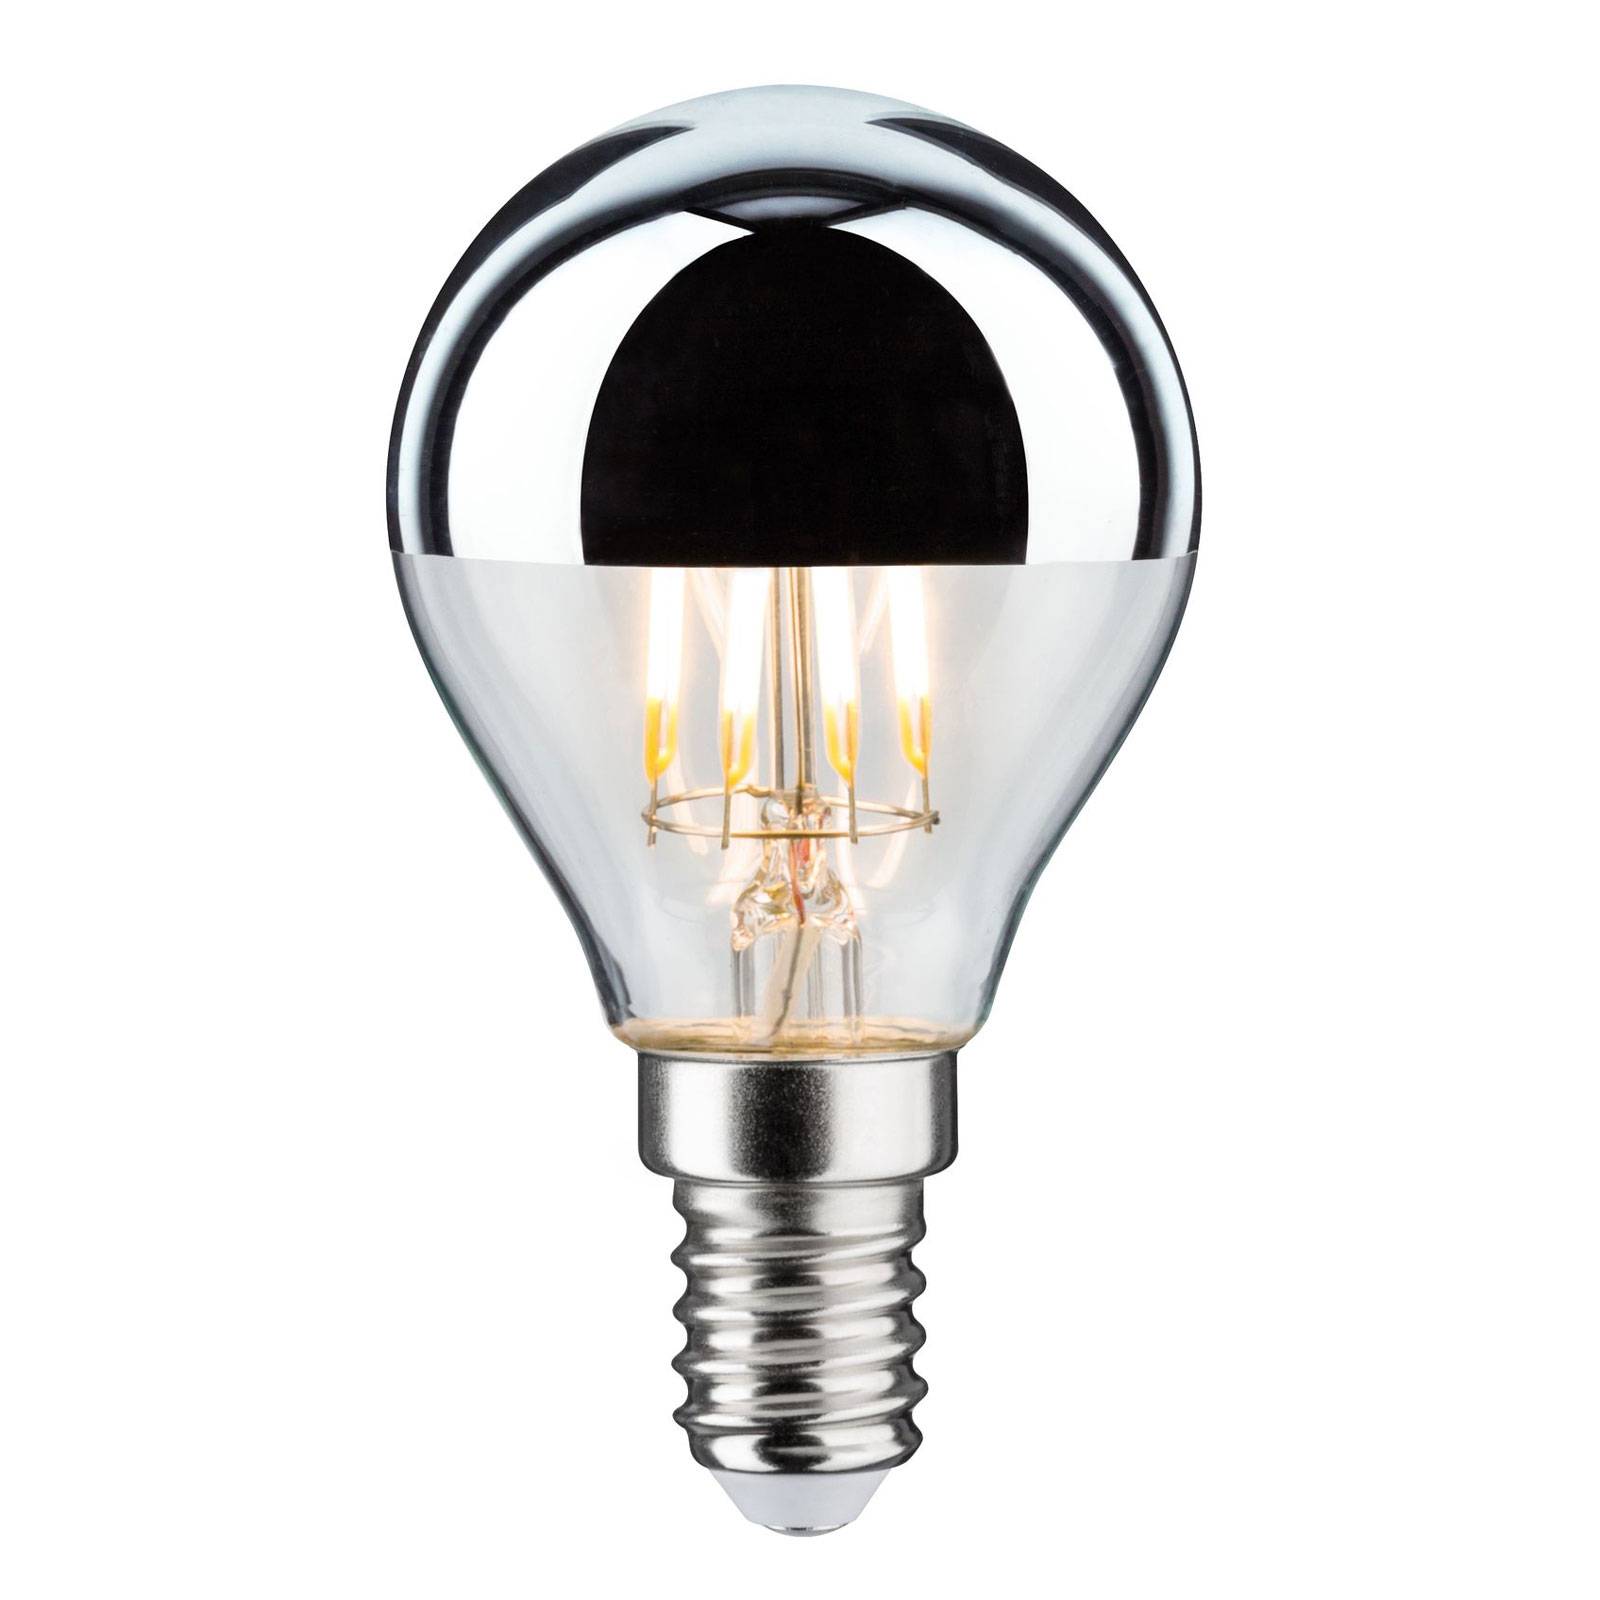 LED lámpa E14 827 tükrös fejű izzó ezüst 4,8W dimm